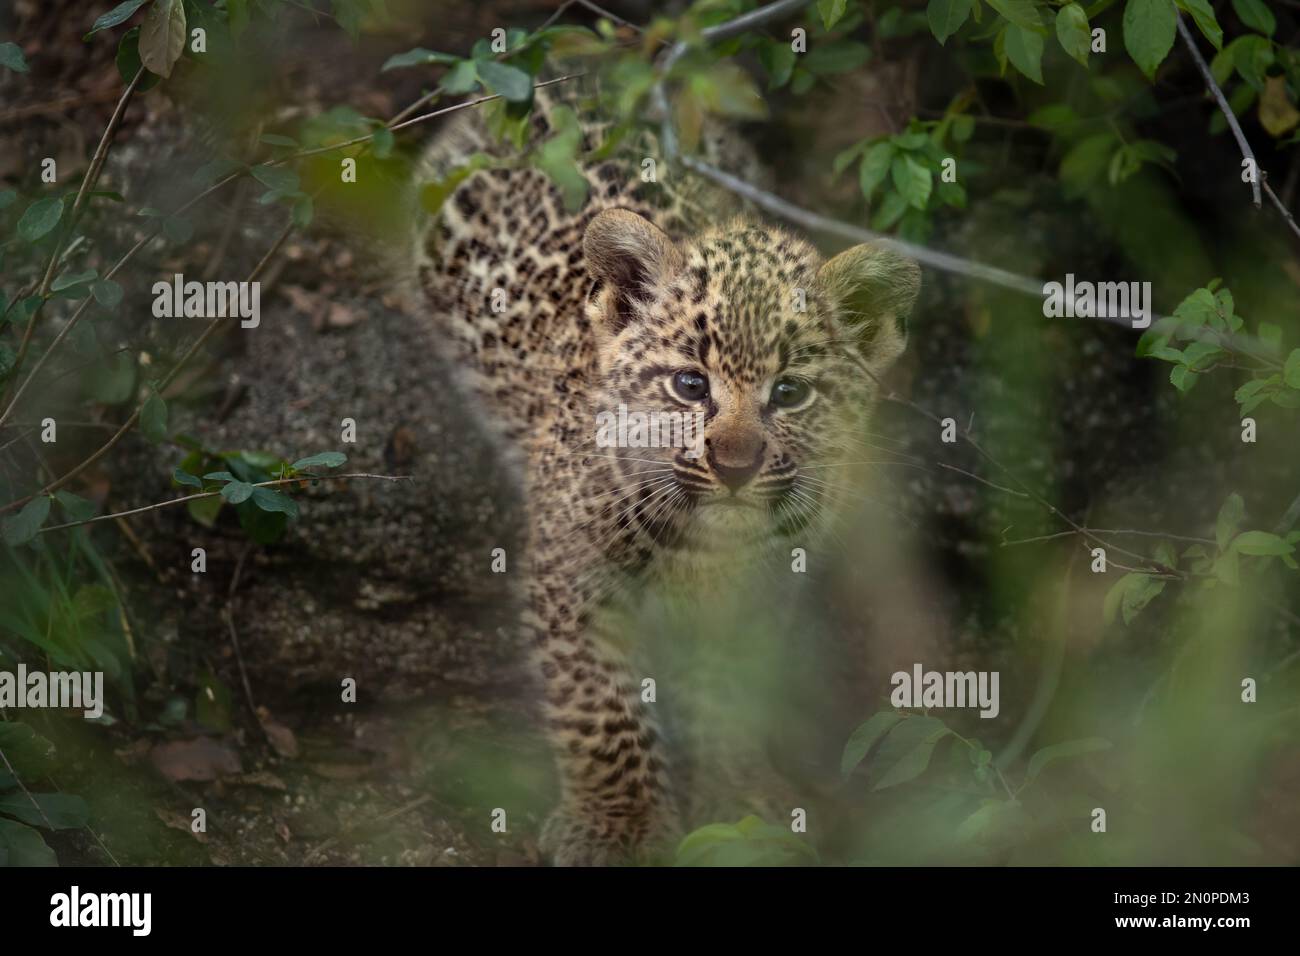 Un leopardo, Panthera pardus,mirando a través de las hojas. Foto de stock